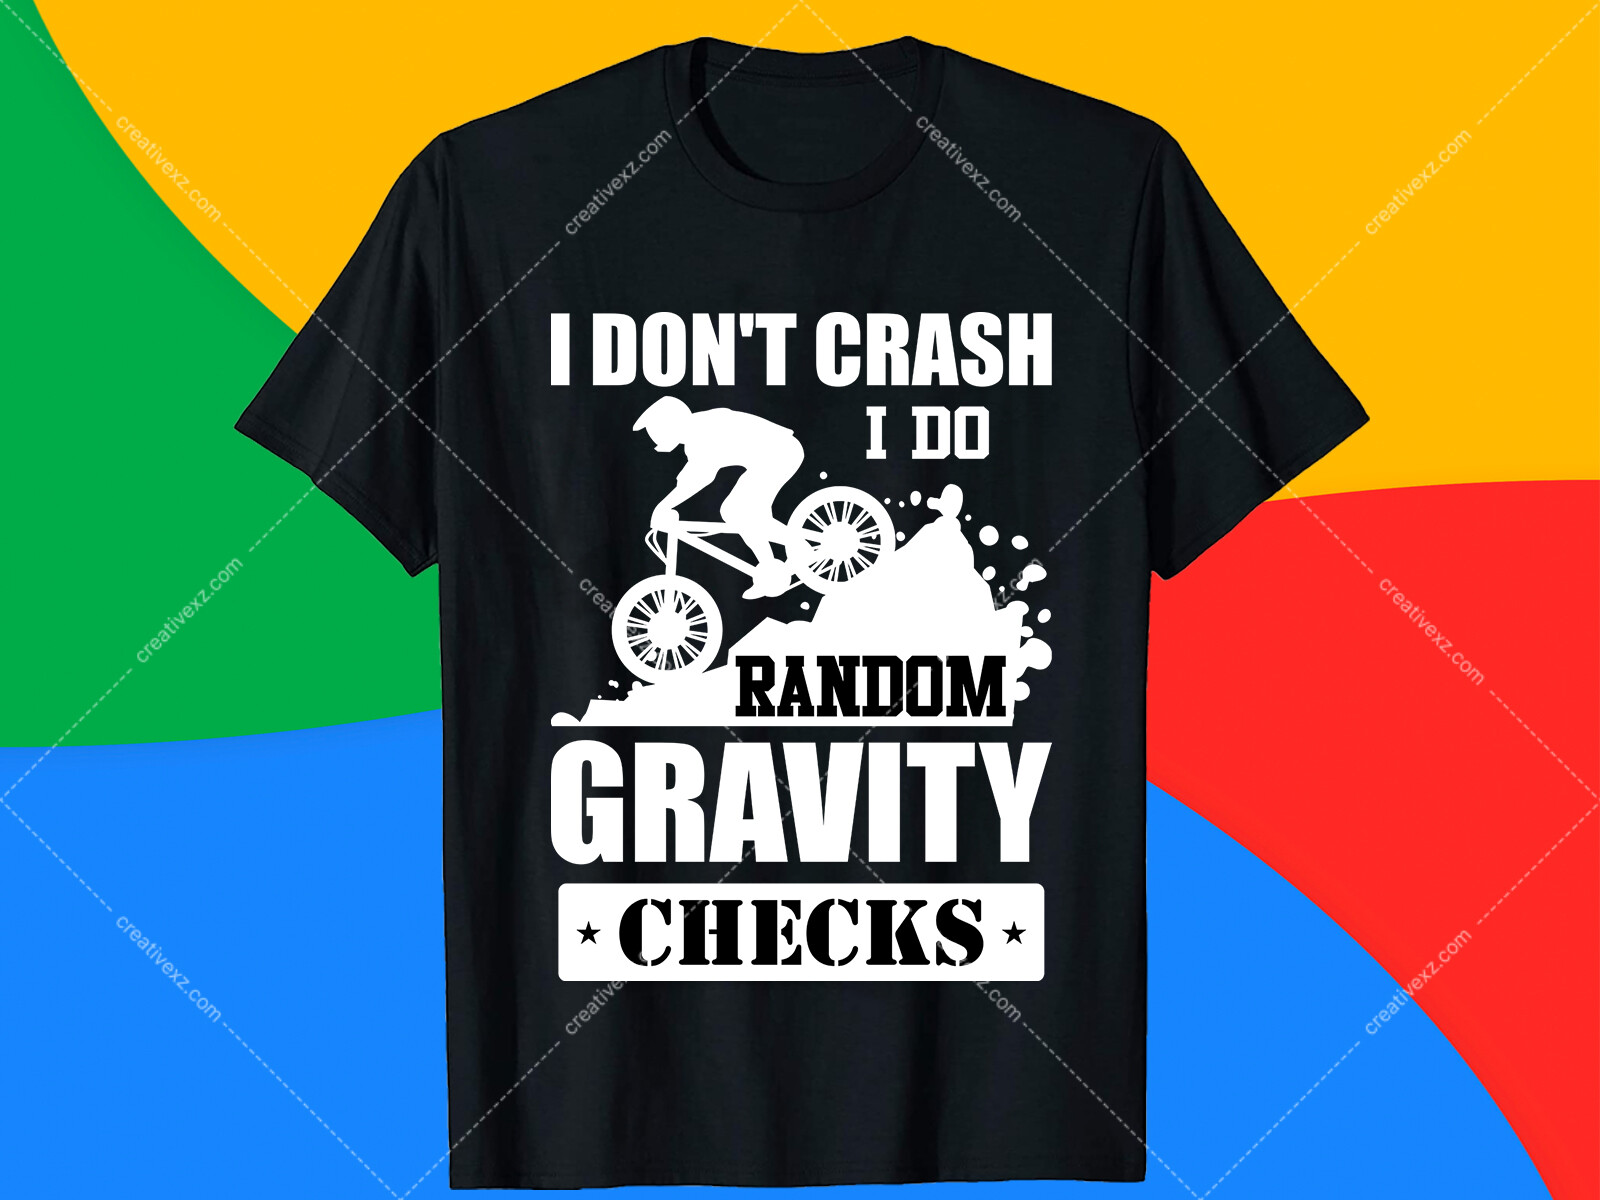 ArtStation - I don't crash i do random gravity checks T Shirt Design.